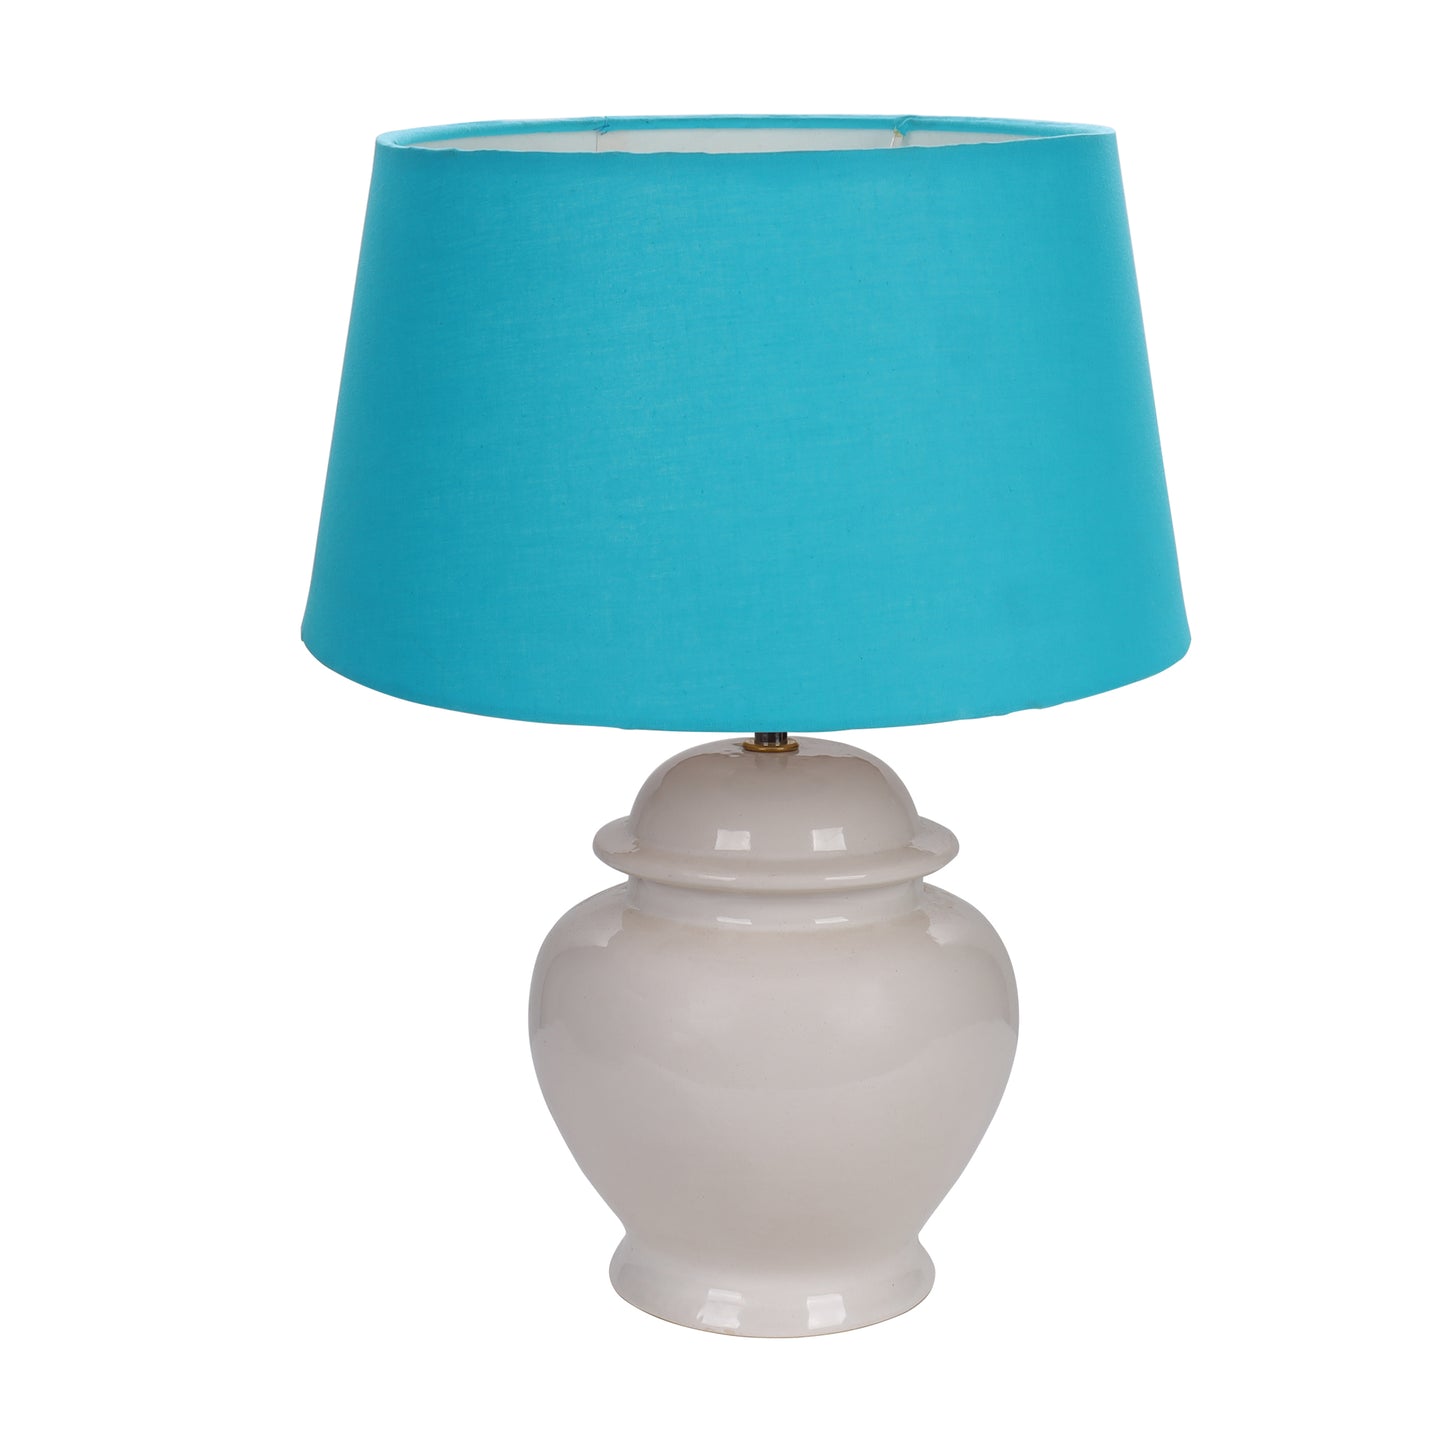 Ceramic Pot Shaped Base White Table Lamp with Turquoise Shade, LED Bulb